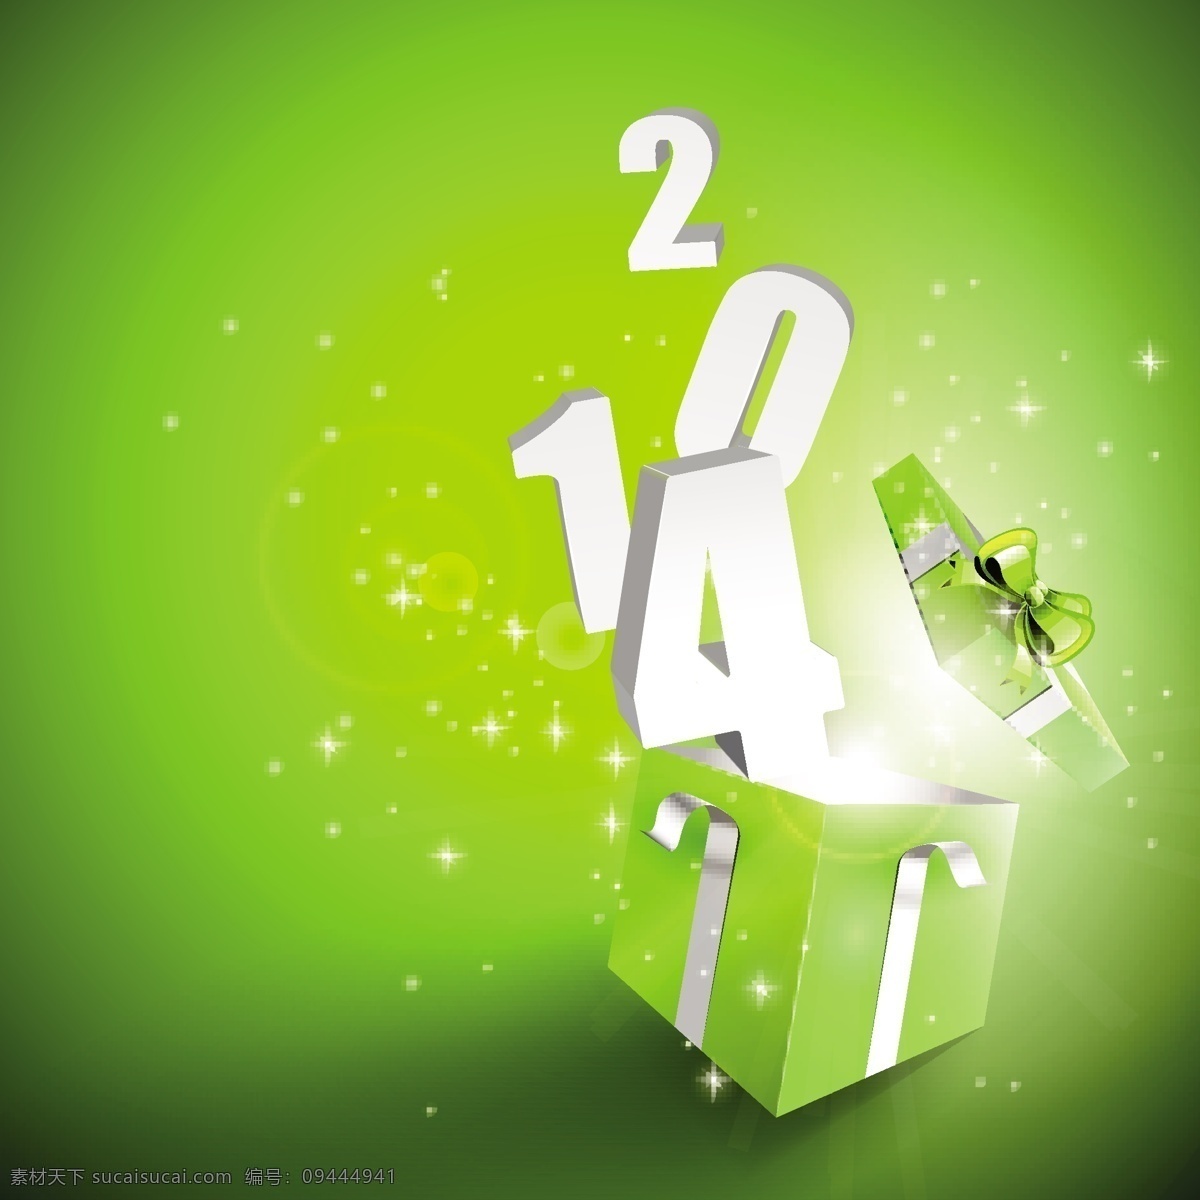 2014 新年 马年 礼品 礼盒 矢量 背景 光晕 蝴蝶结 节日 绿色背景 矢量图